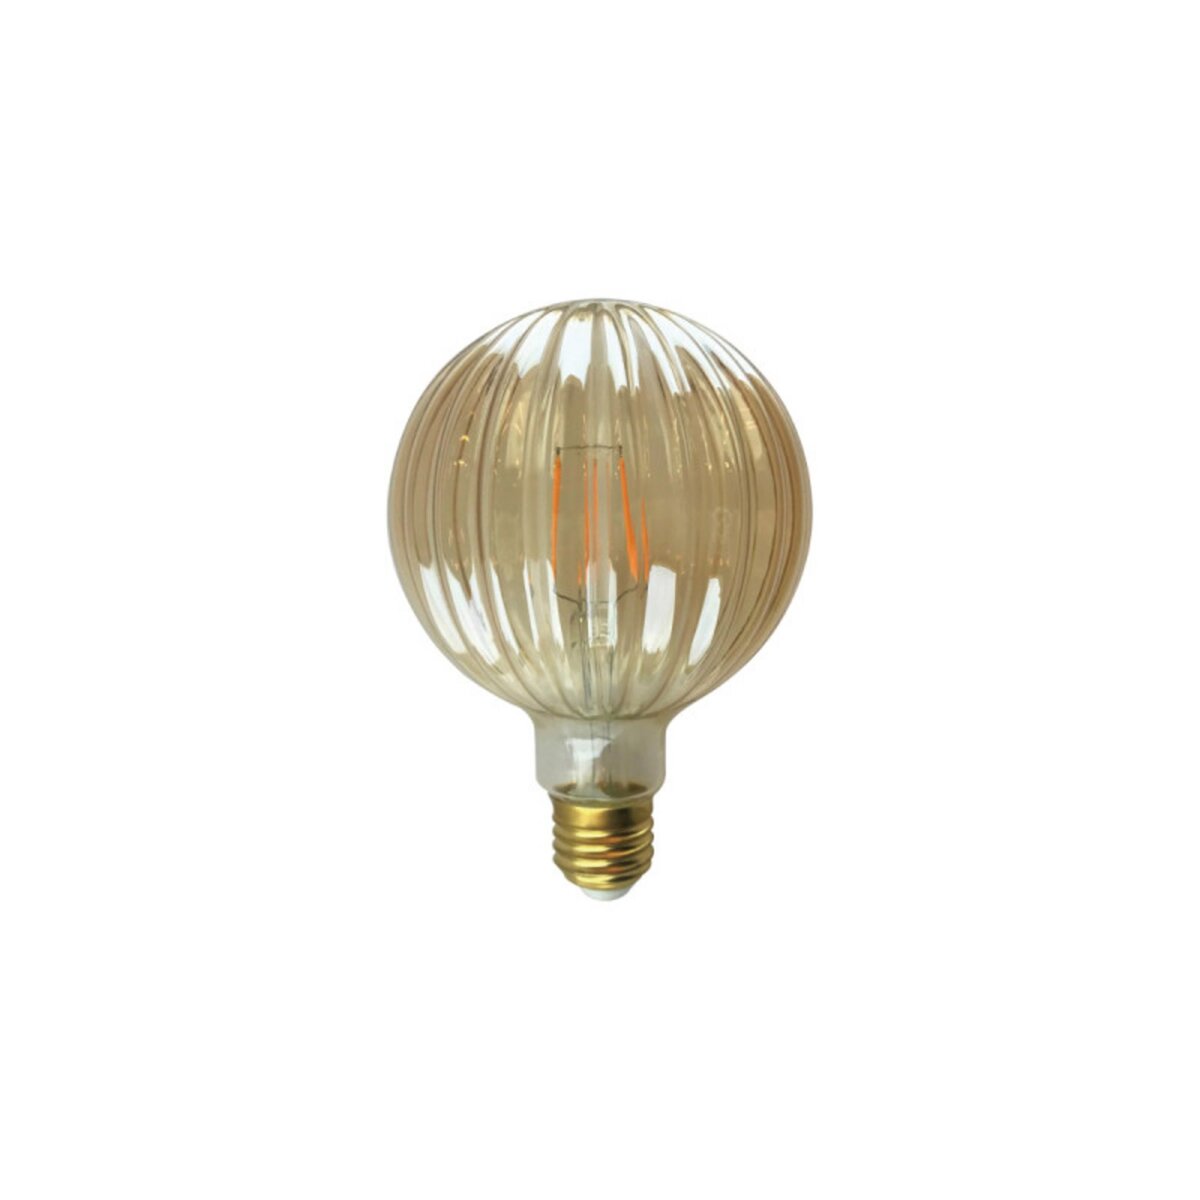  Ampoule LED striée ambrée XXCELL - 6 W - 500 lumens - 2700 K - E27